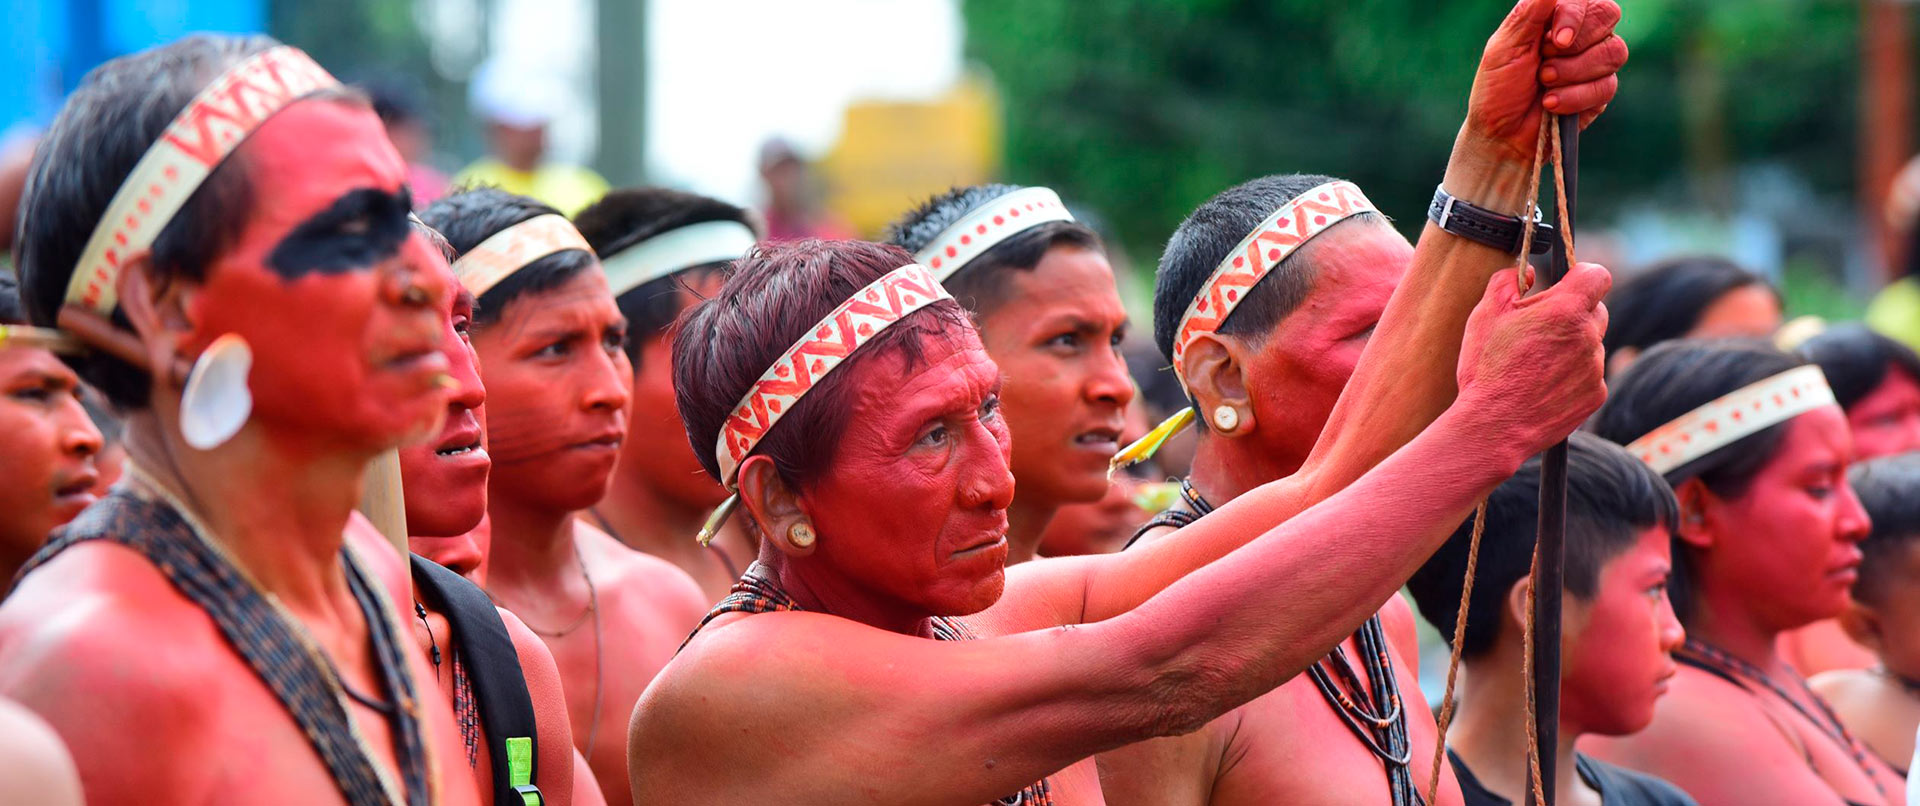 audiodescrição: fotografia colorida de diversos indígenas matis, eles estão pintados de urucum, com a pele vermelha